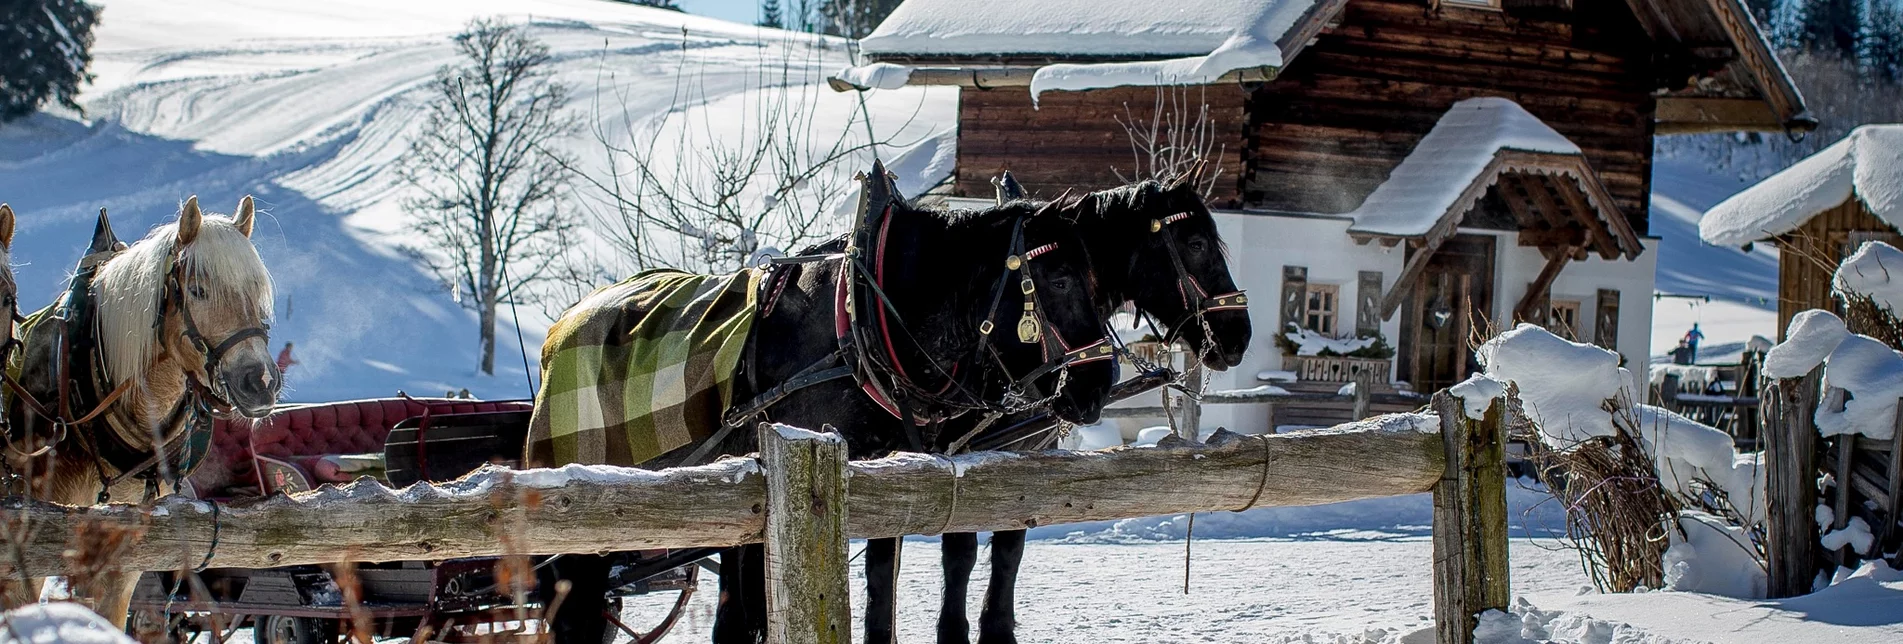 Horse Carriage Ride "Leitenround" - sleighs - Touren-Impression #1 | © Erlebnisregion Schladming-Dachstein